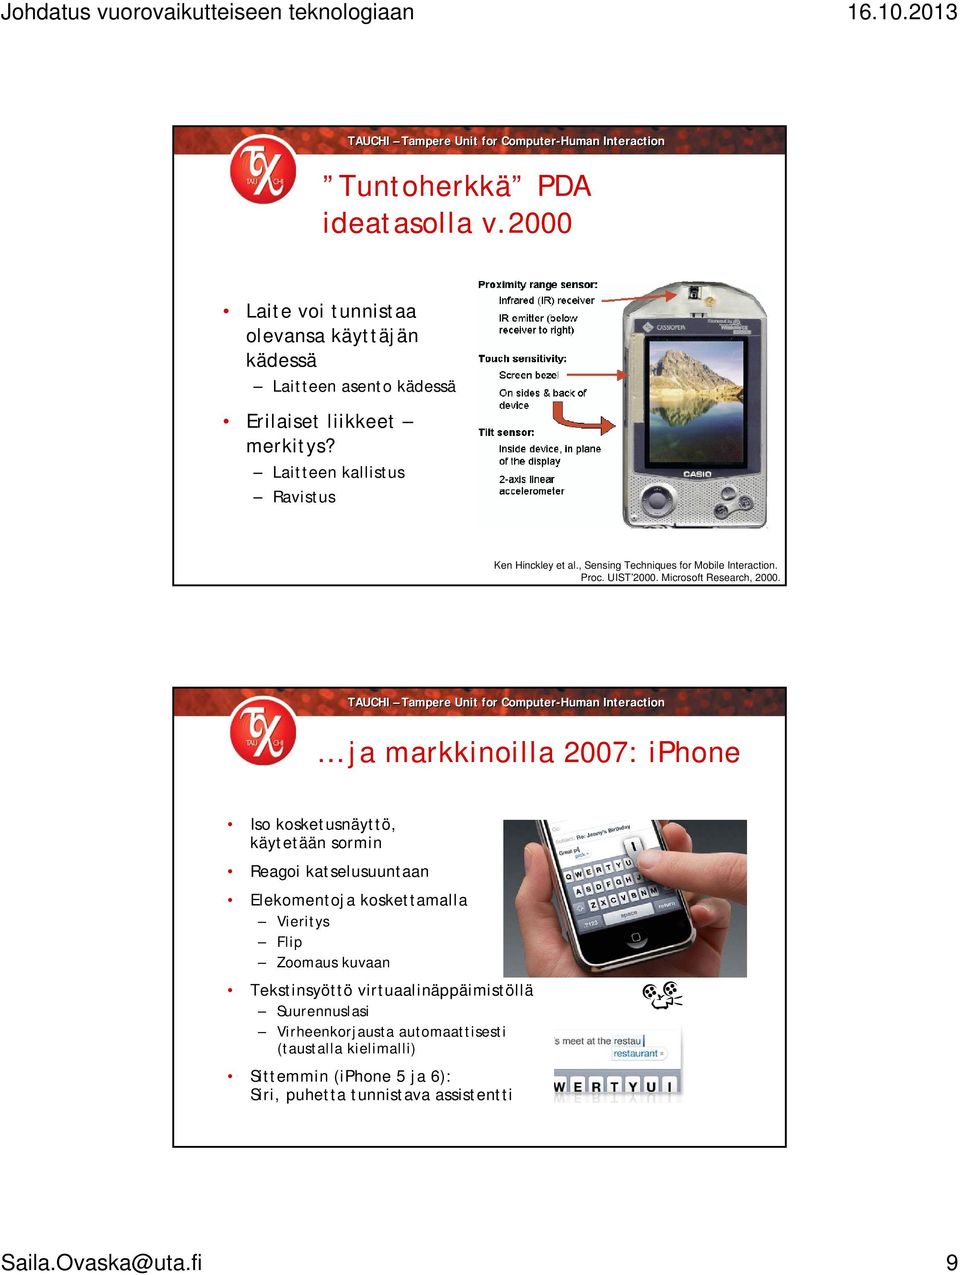 ja markkinoilla 2007: iphone Iso kosketusnäyttö, käytetään sormin Reagoi katselusuuntaan Elekomentoja koskettamalla Vieritys Flip Zoomaus kuvaan